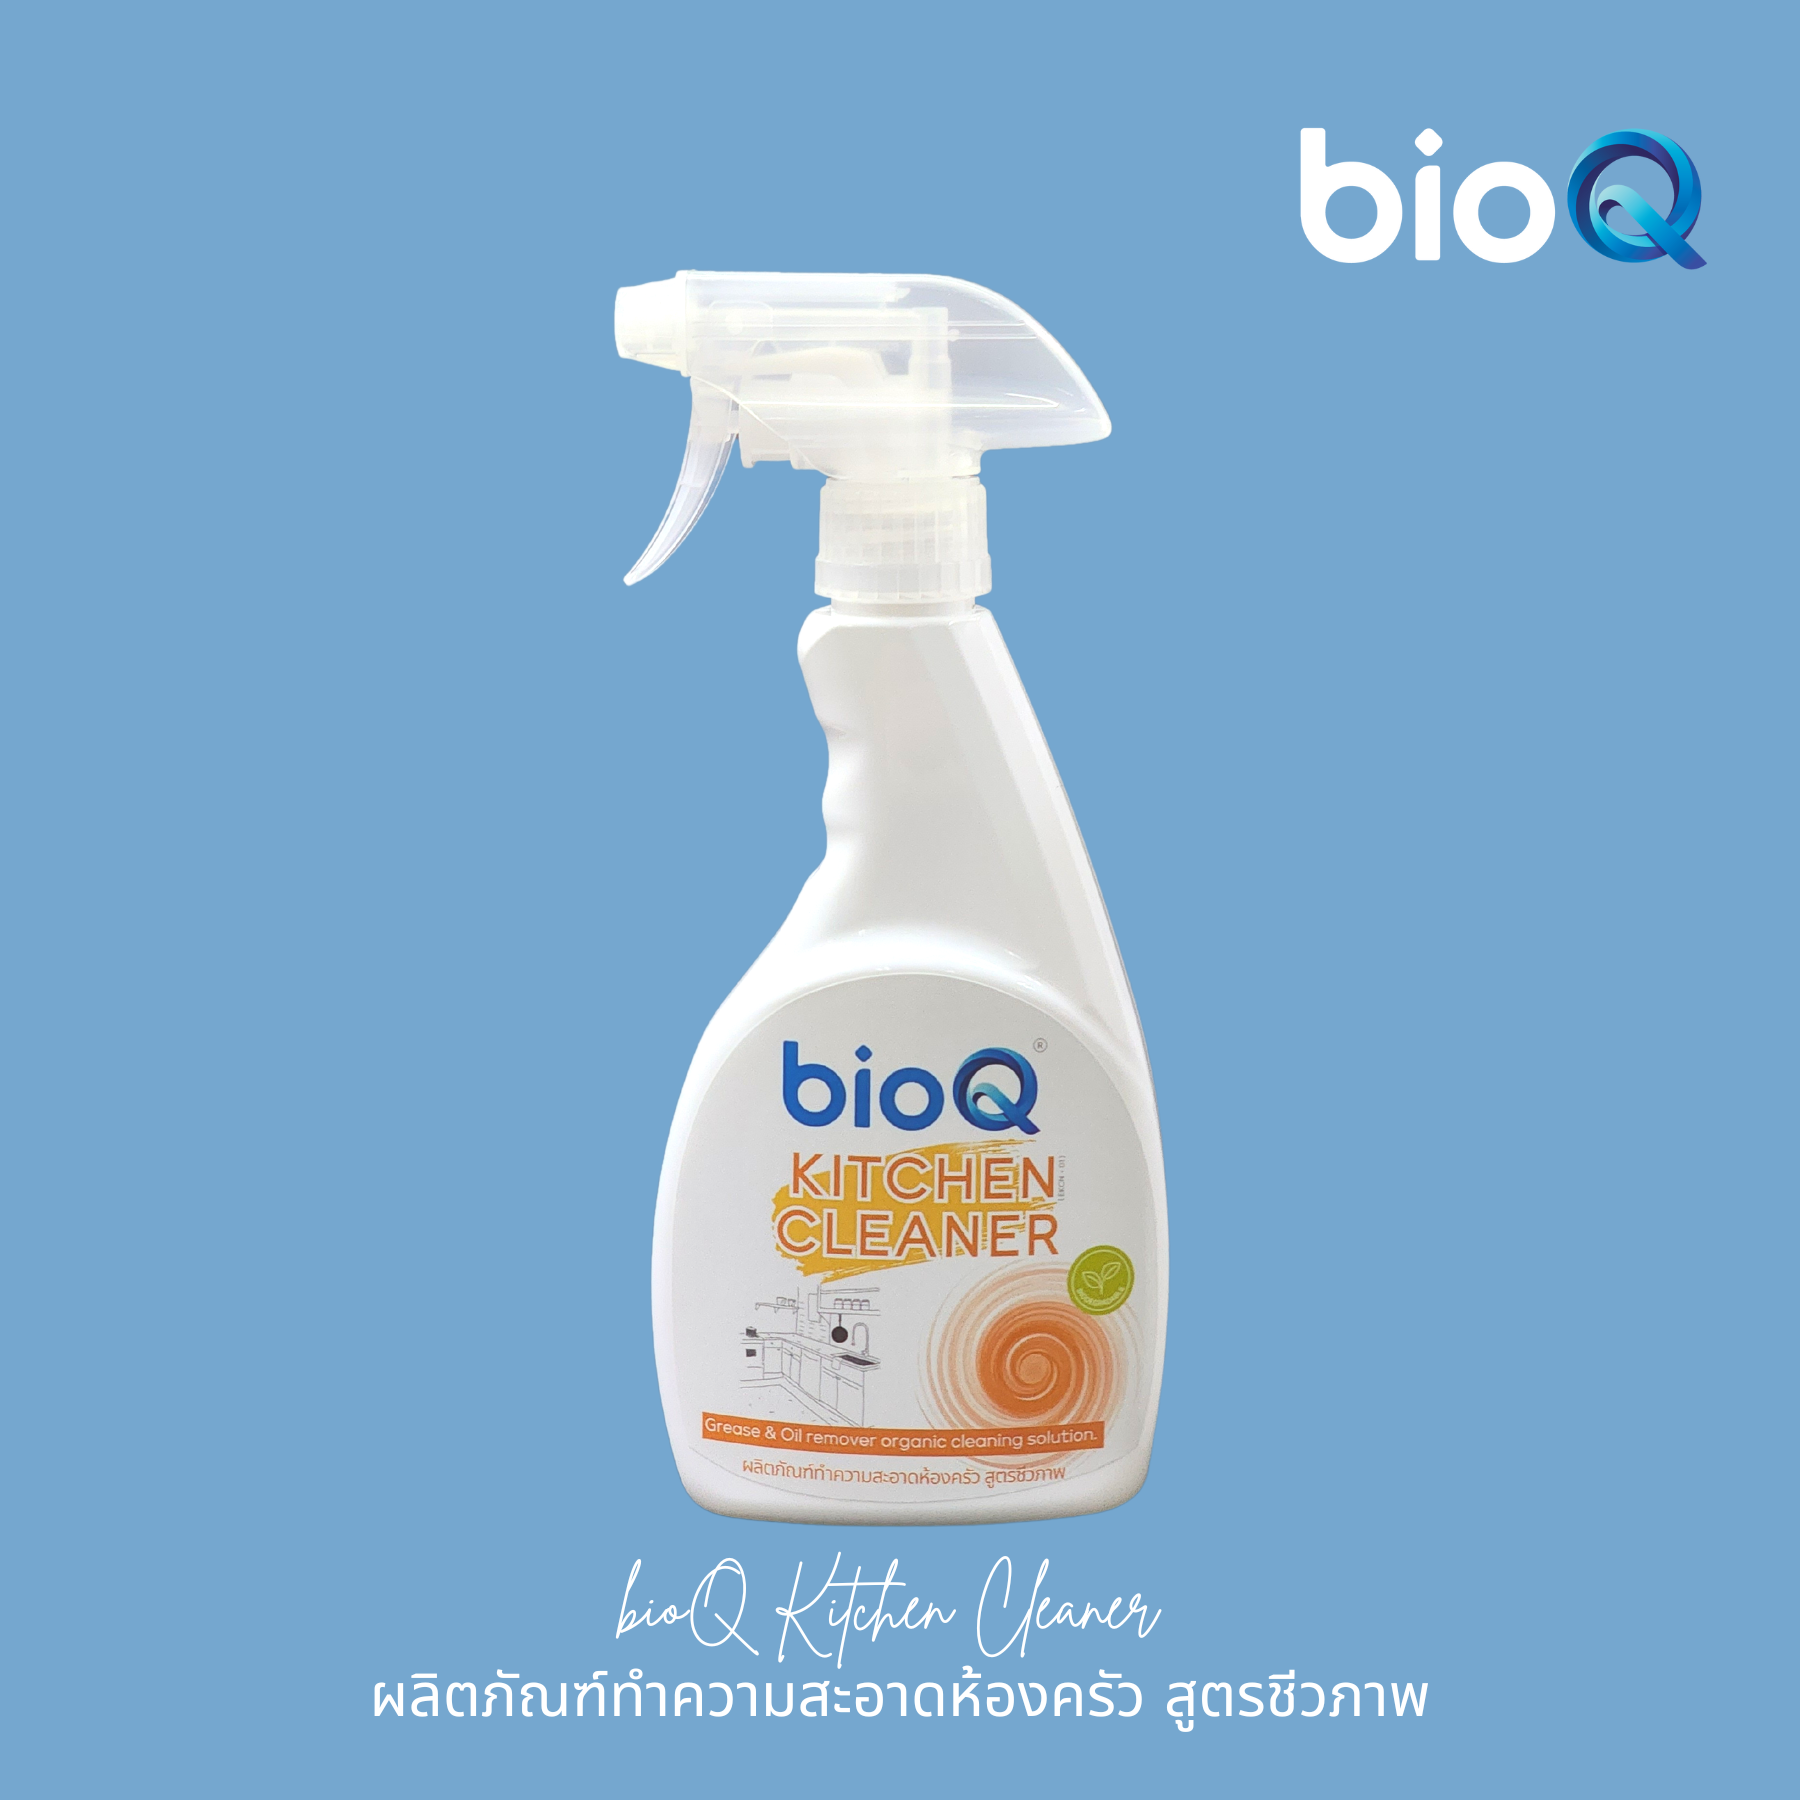 ผลิตภัณฑ์ทำความสะอาดห้องครัว ไบโอคิว คิทเช่น คลีนเนอร์  / bioQ Kitchen Cleaner 500 ml.